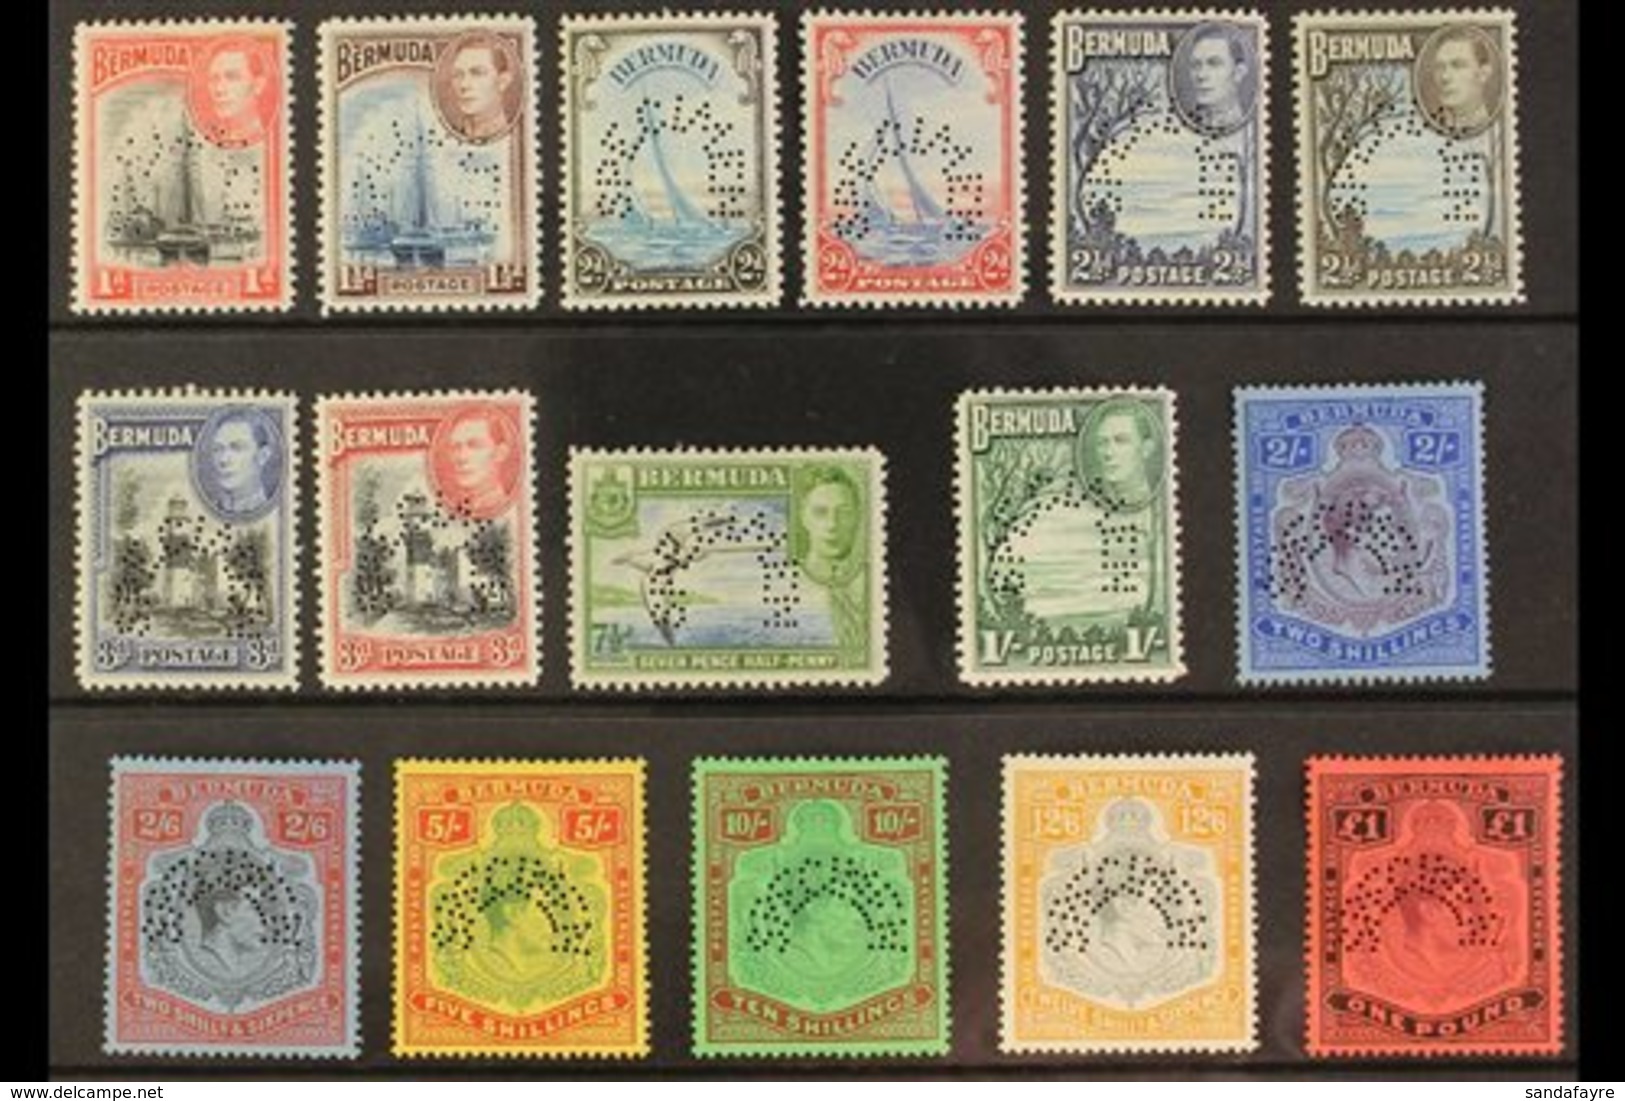 \Y 1938\Y Geo VI Set Complete, Perforated "Specimen", SG 110s/121ds, Very Fine Mint, Large Part Og. Rare Set. (16 Stamps - Bermudes